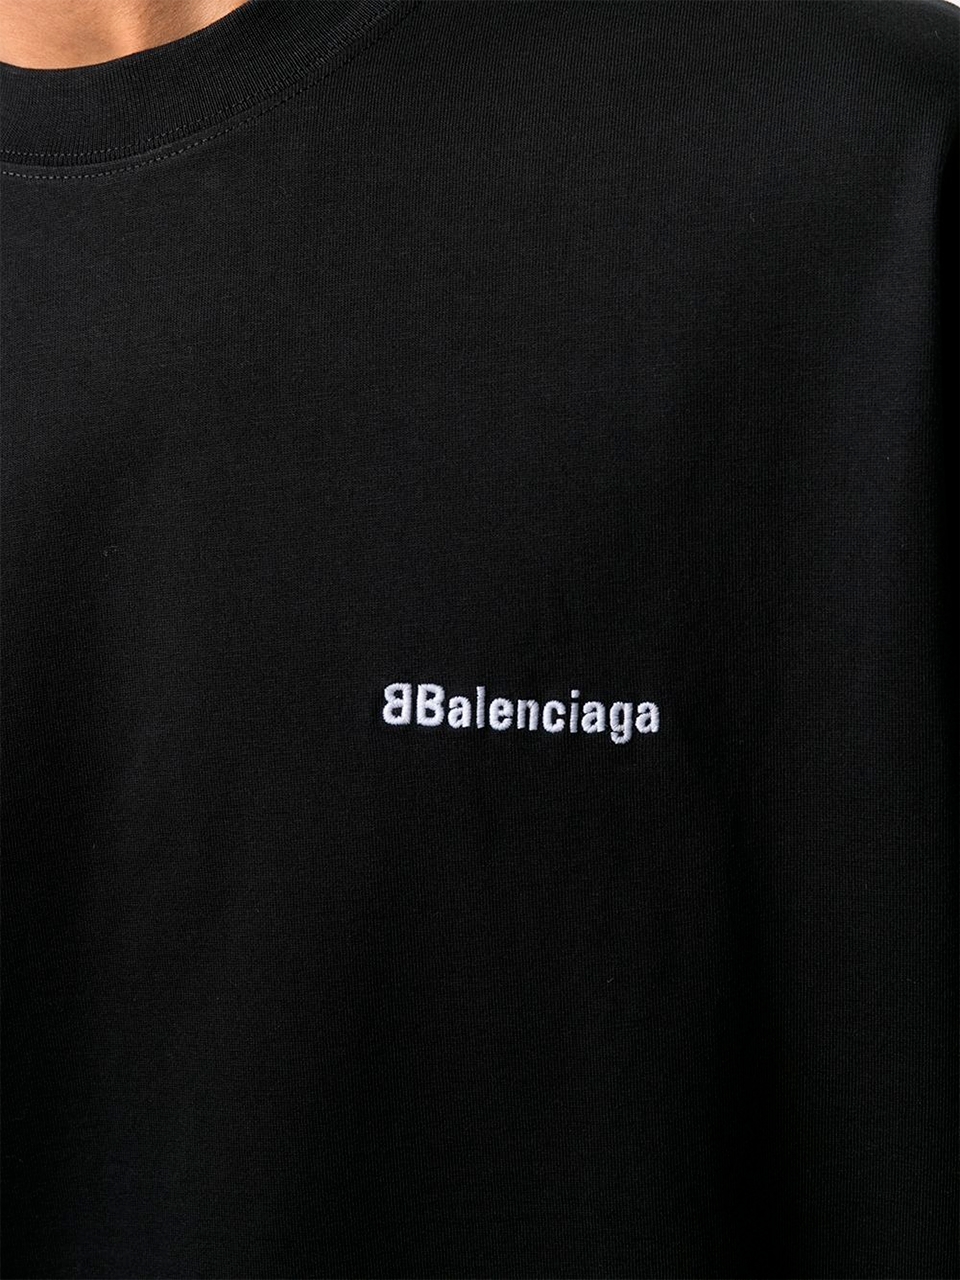 Imagem de: Camiseta Balenciaga Preta com Logo Bordado BB